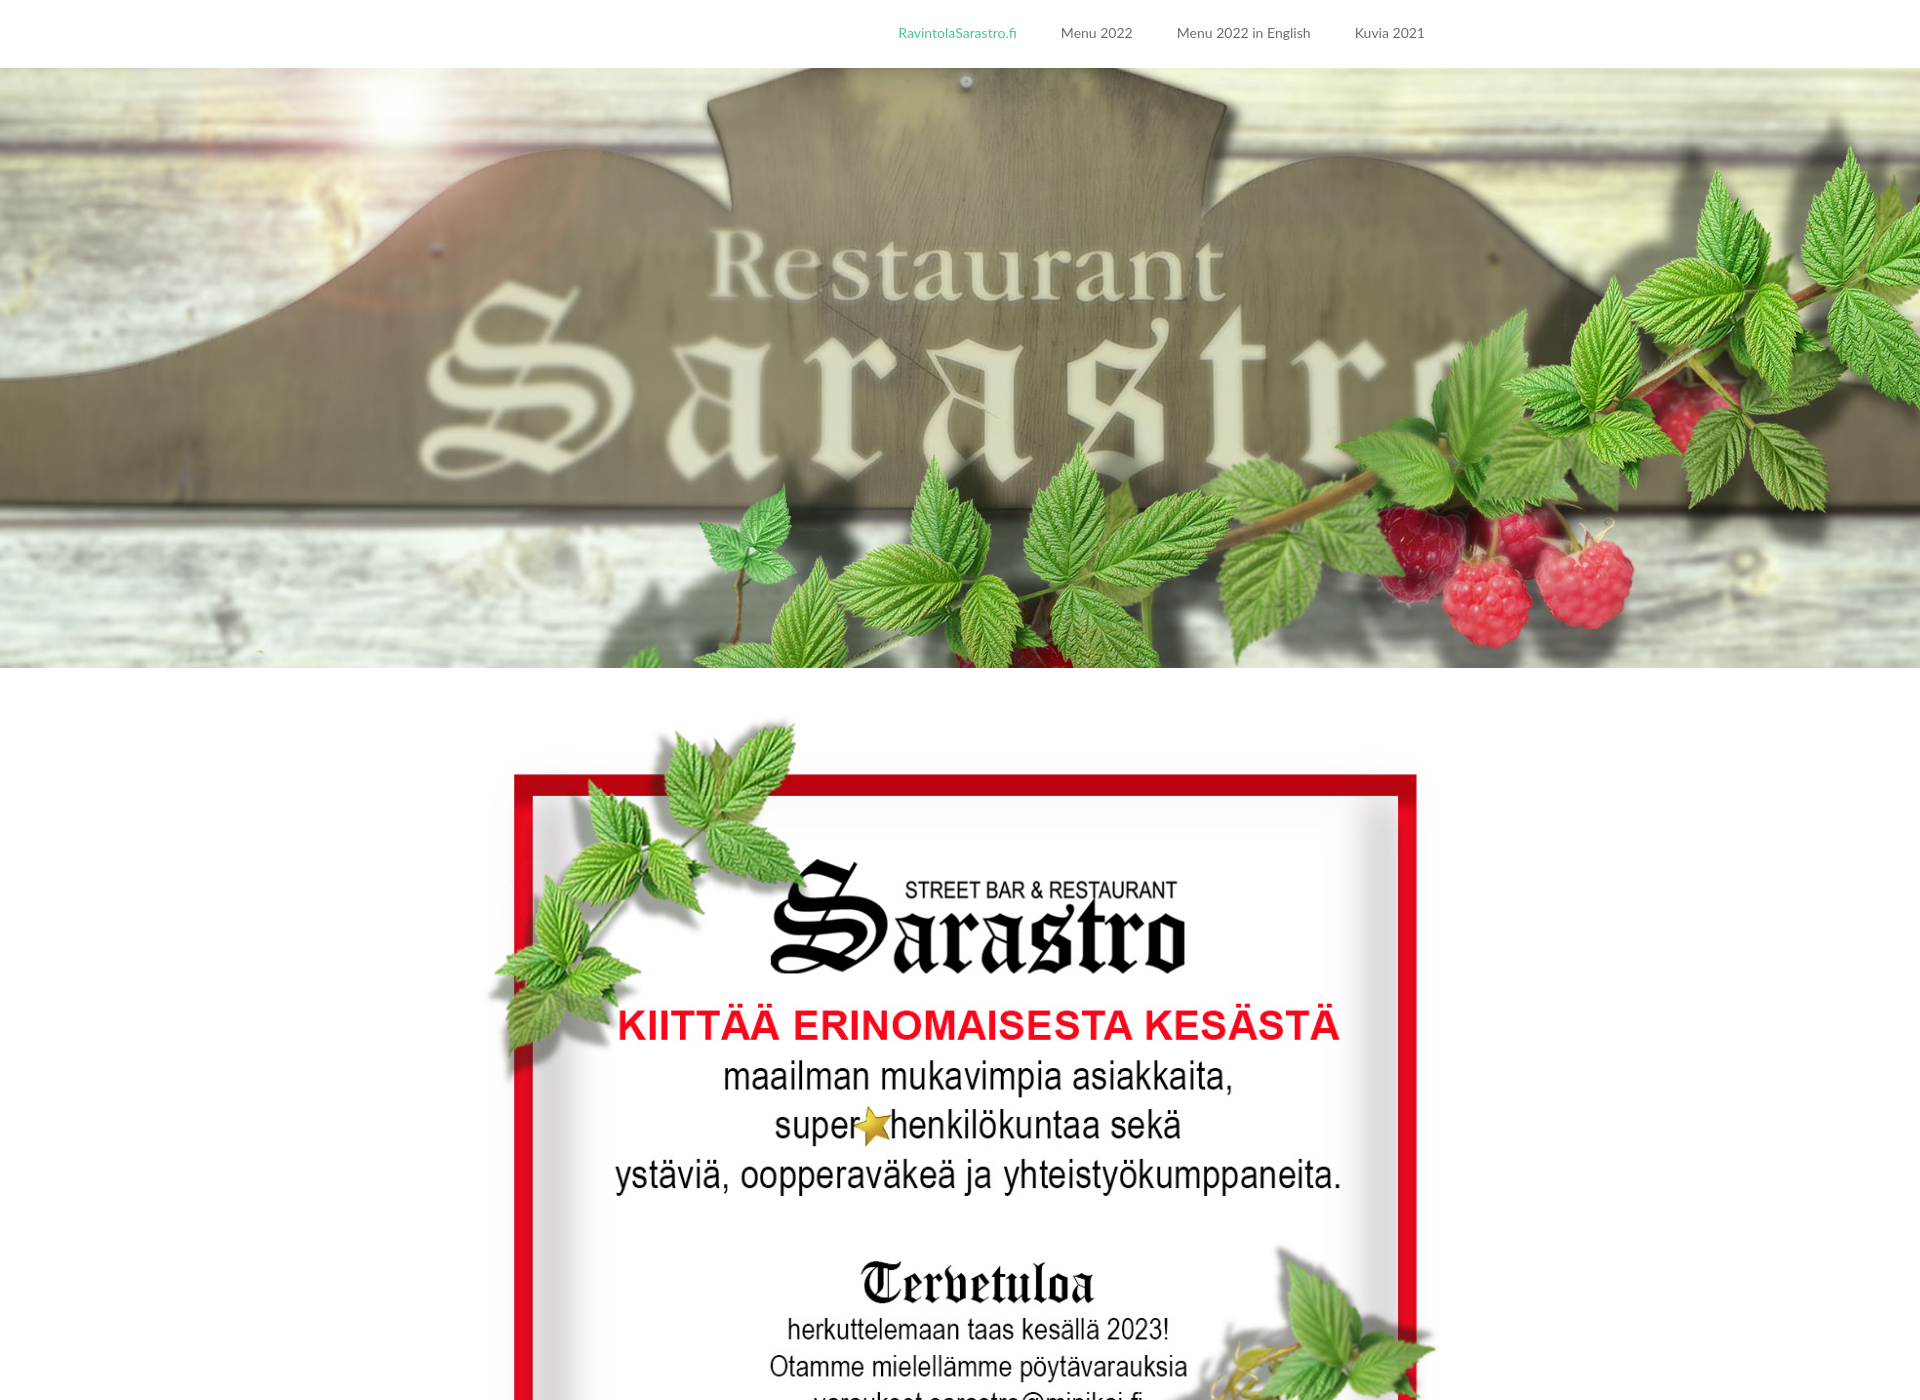 Skärmdump för ravintolasarastro.fi